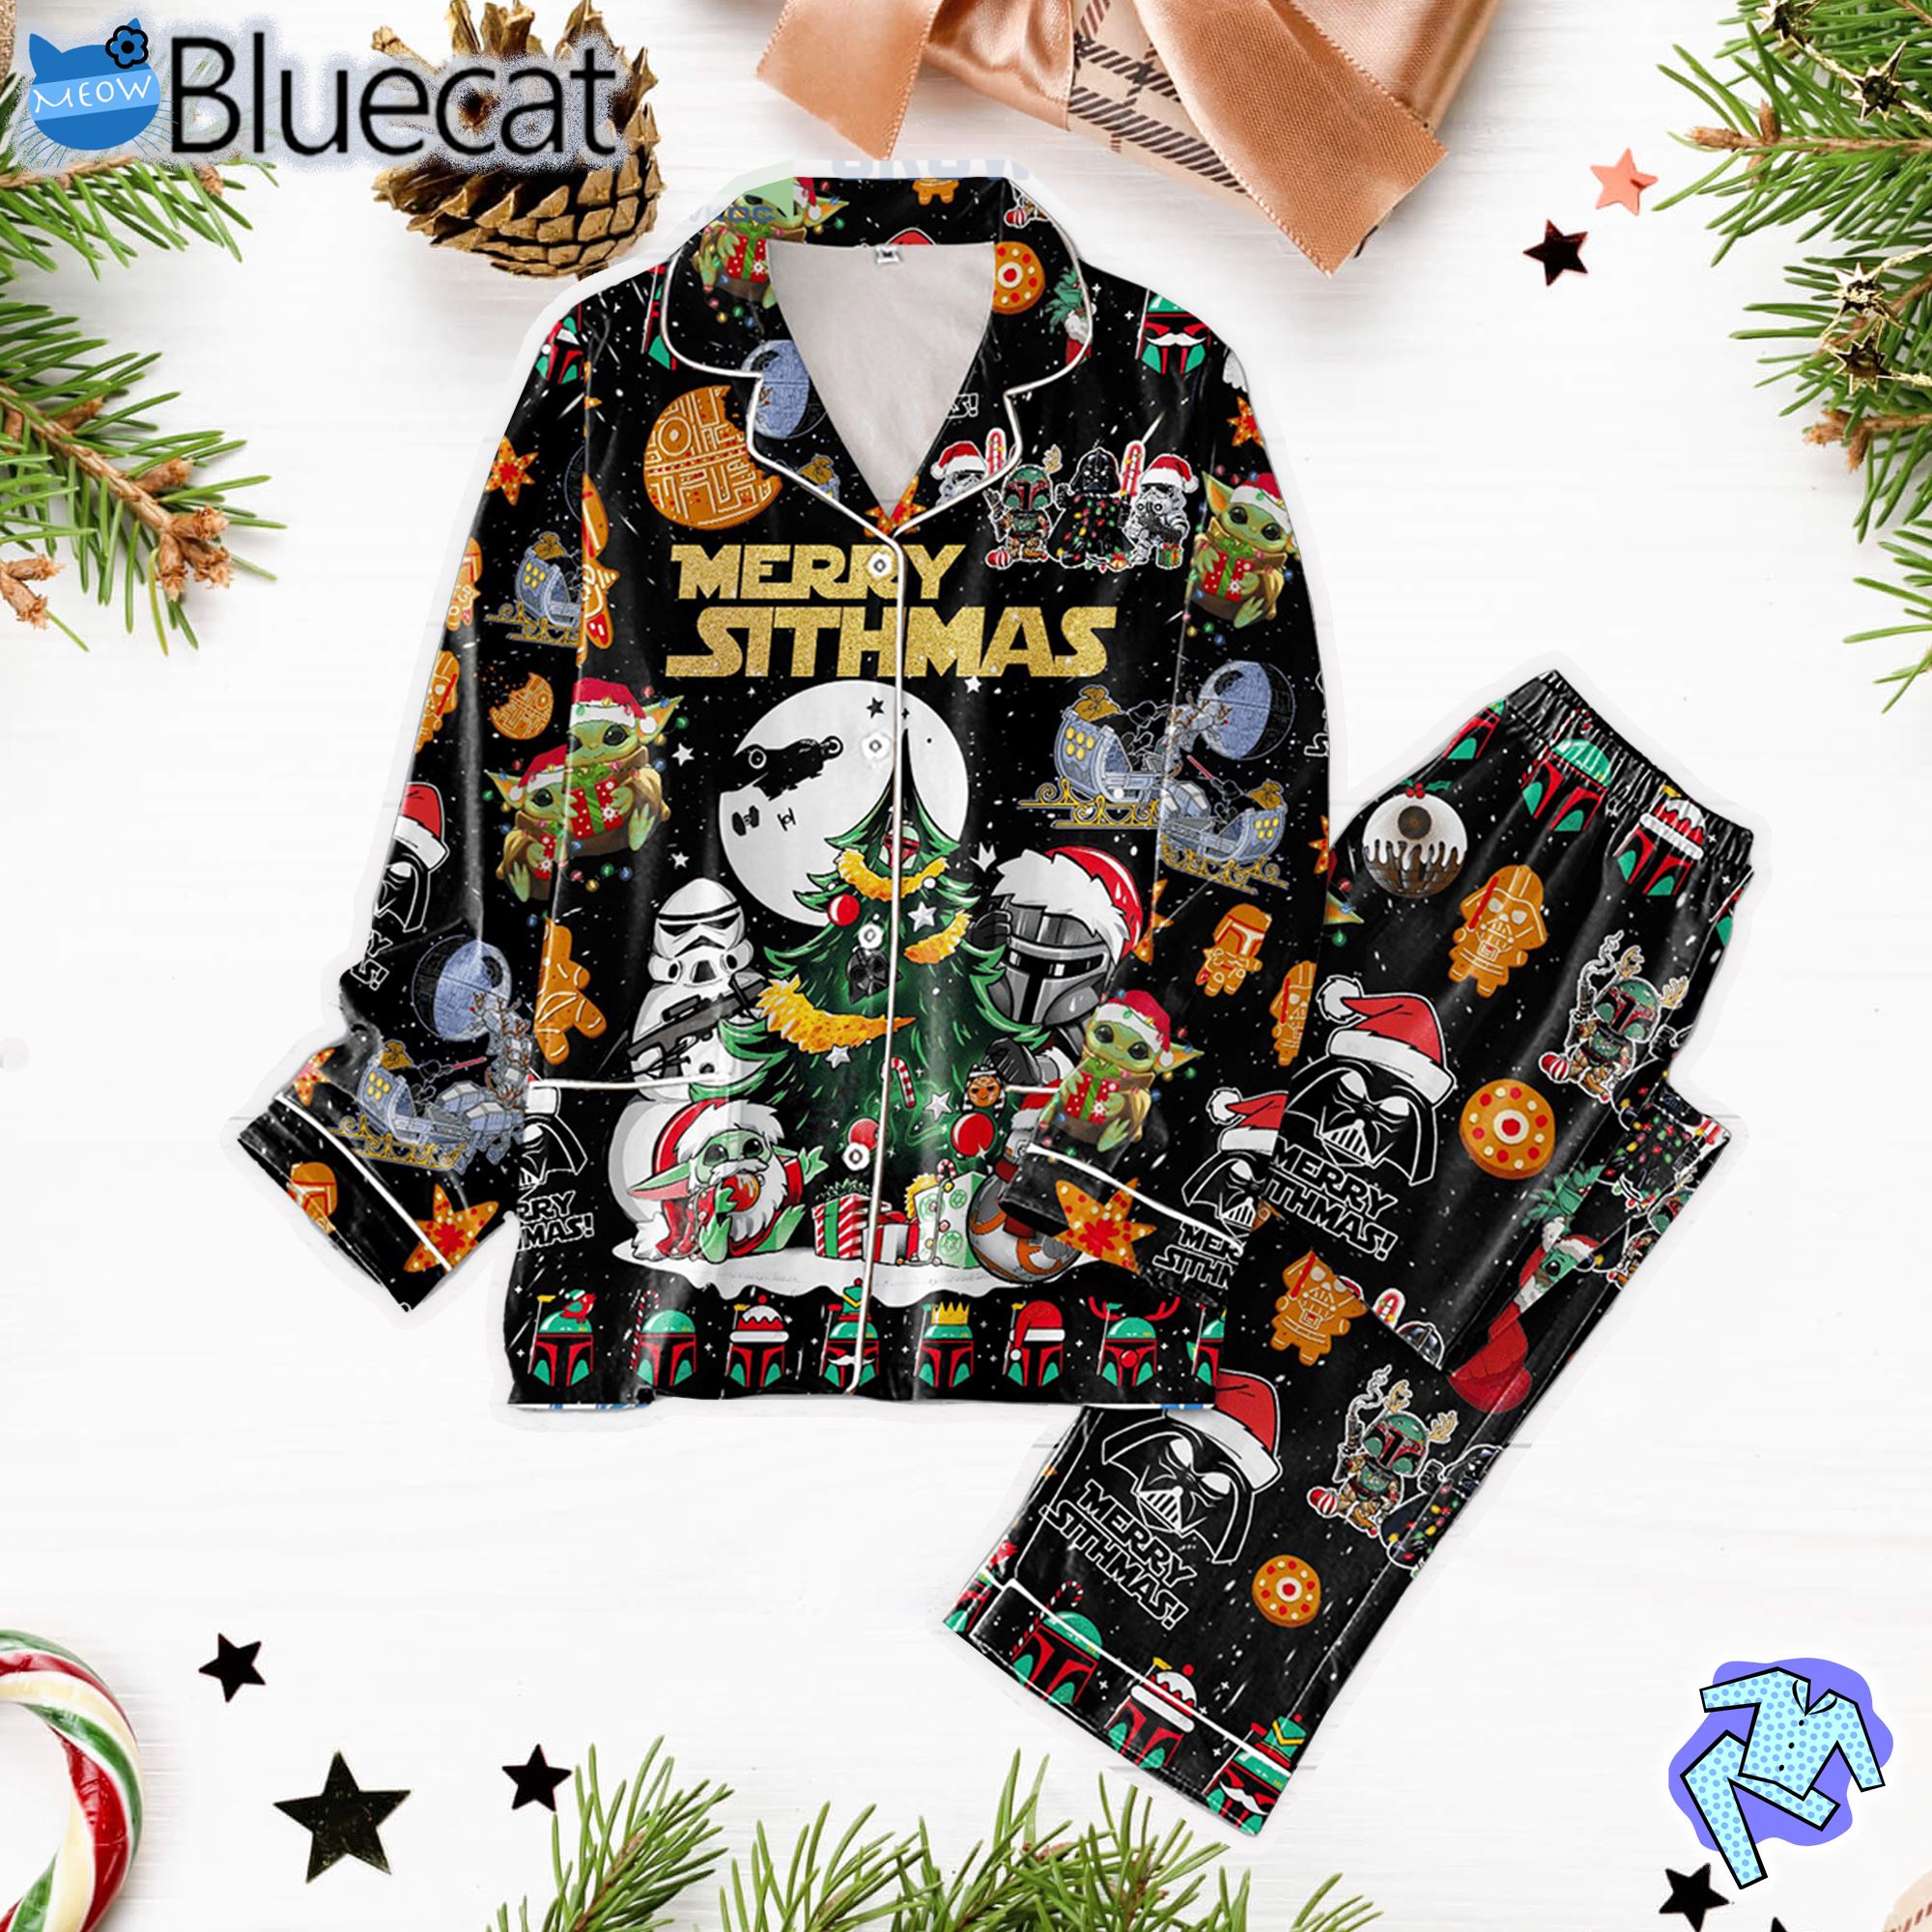 Merry Sithmas Star Wars Baby Yoda Pajamas Set 